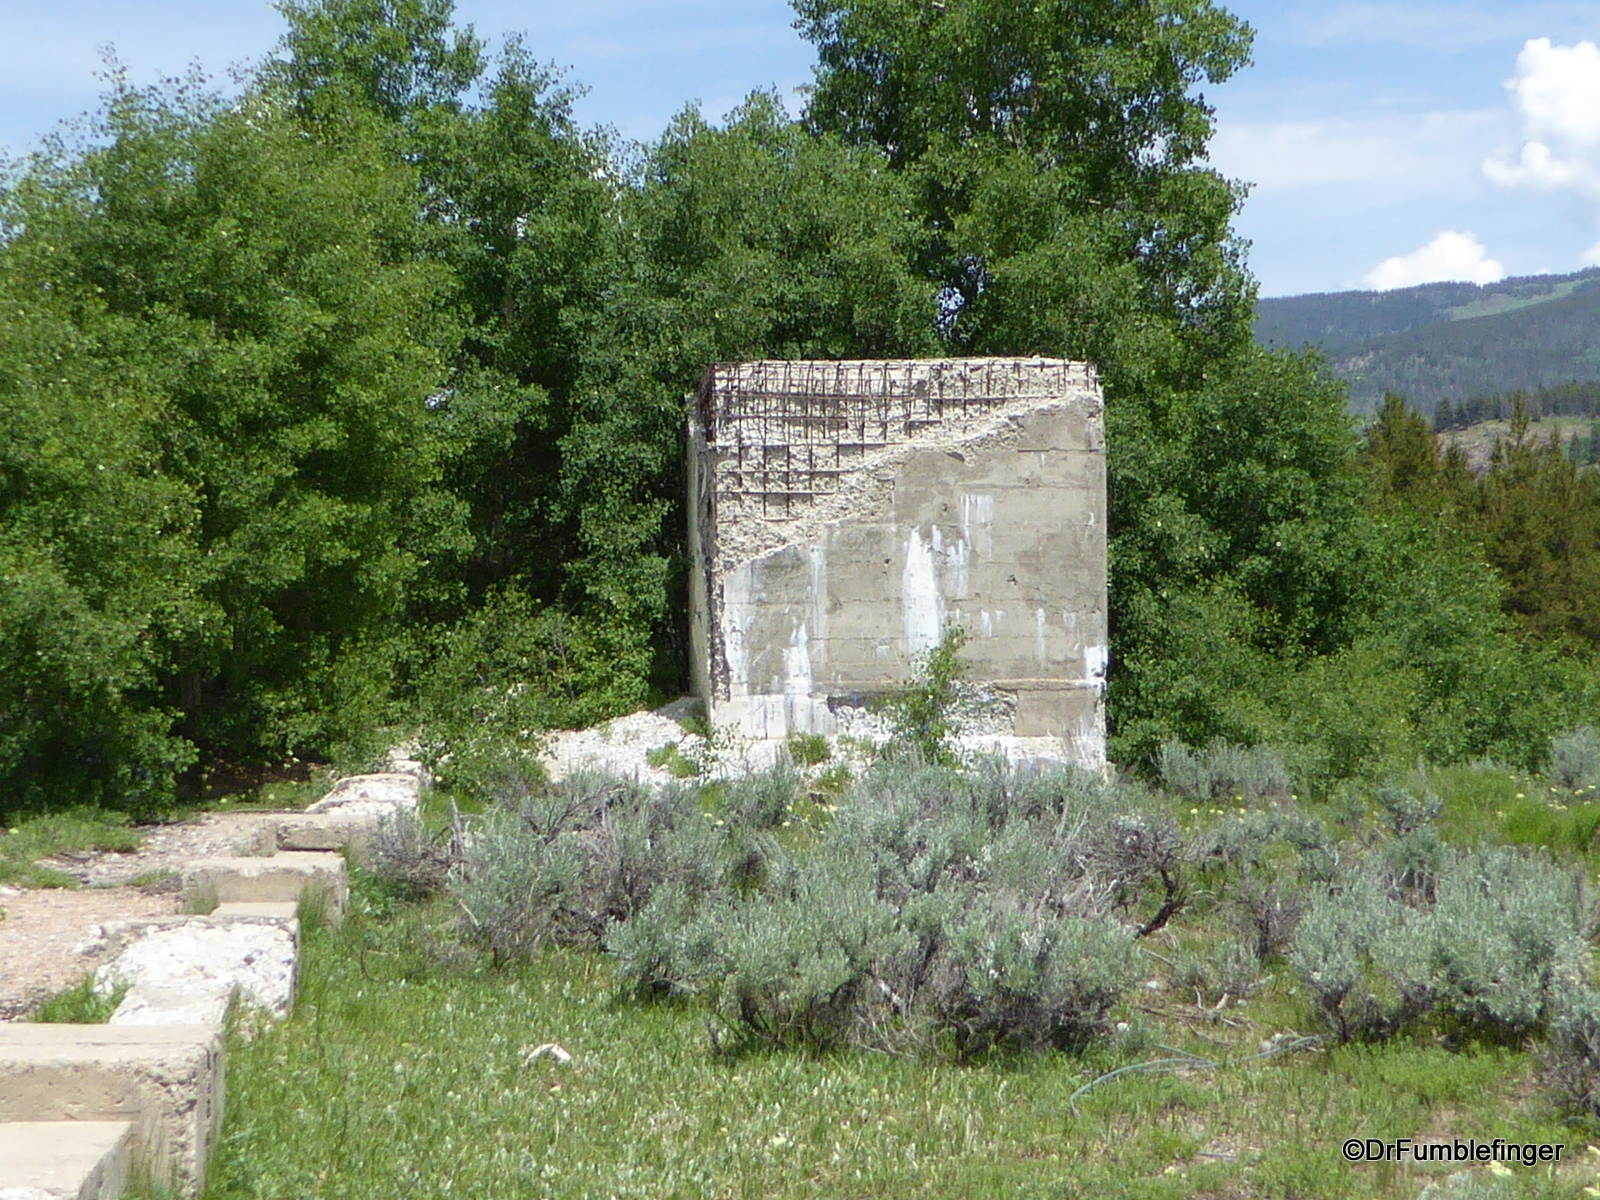 Ruins at Camp Hale